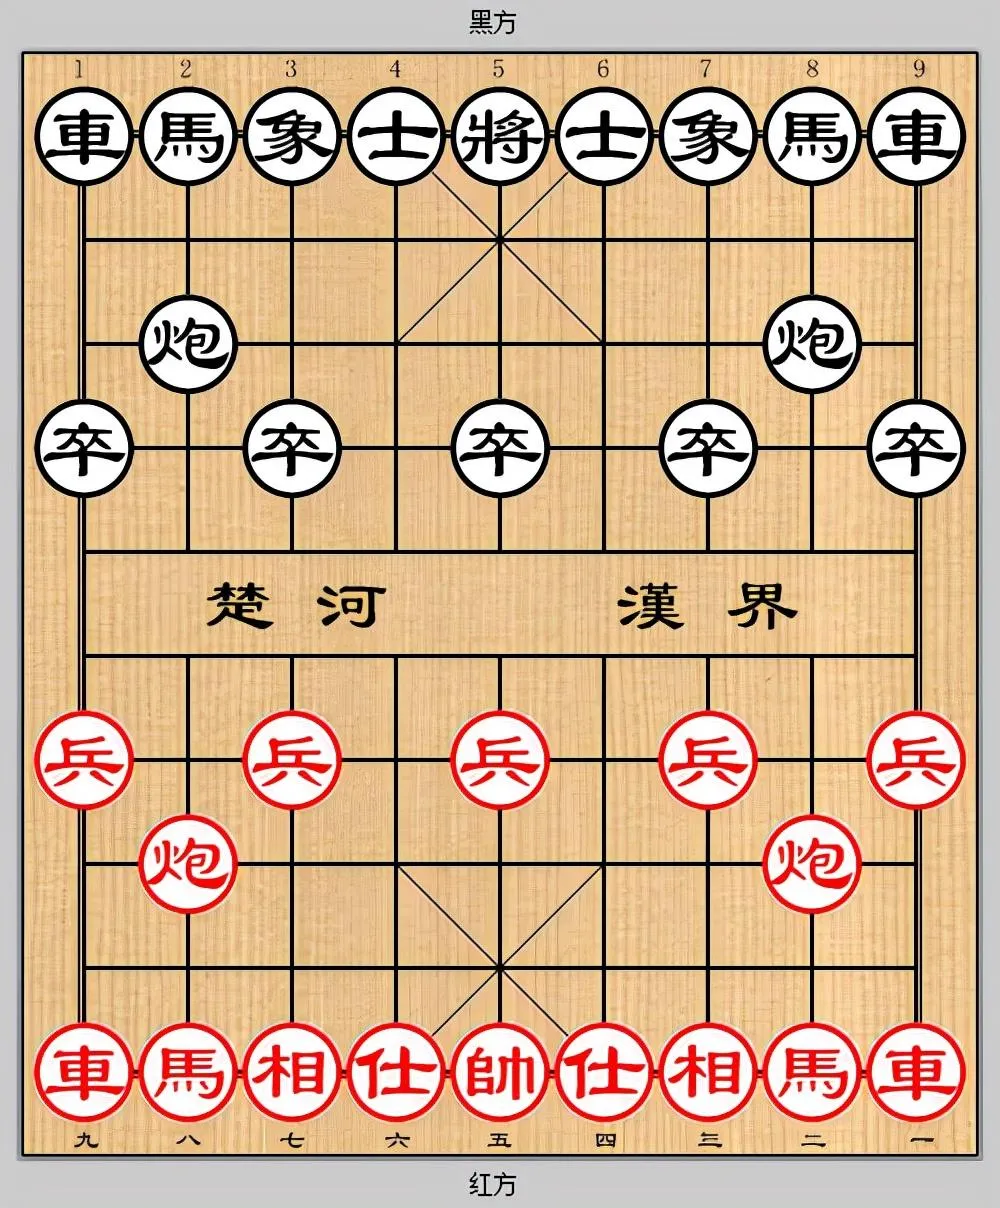 中国象棋有多少个棋子 | 棋子和棋盘基础知识讲解